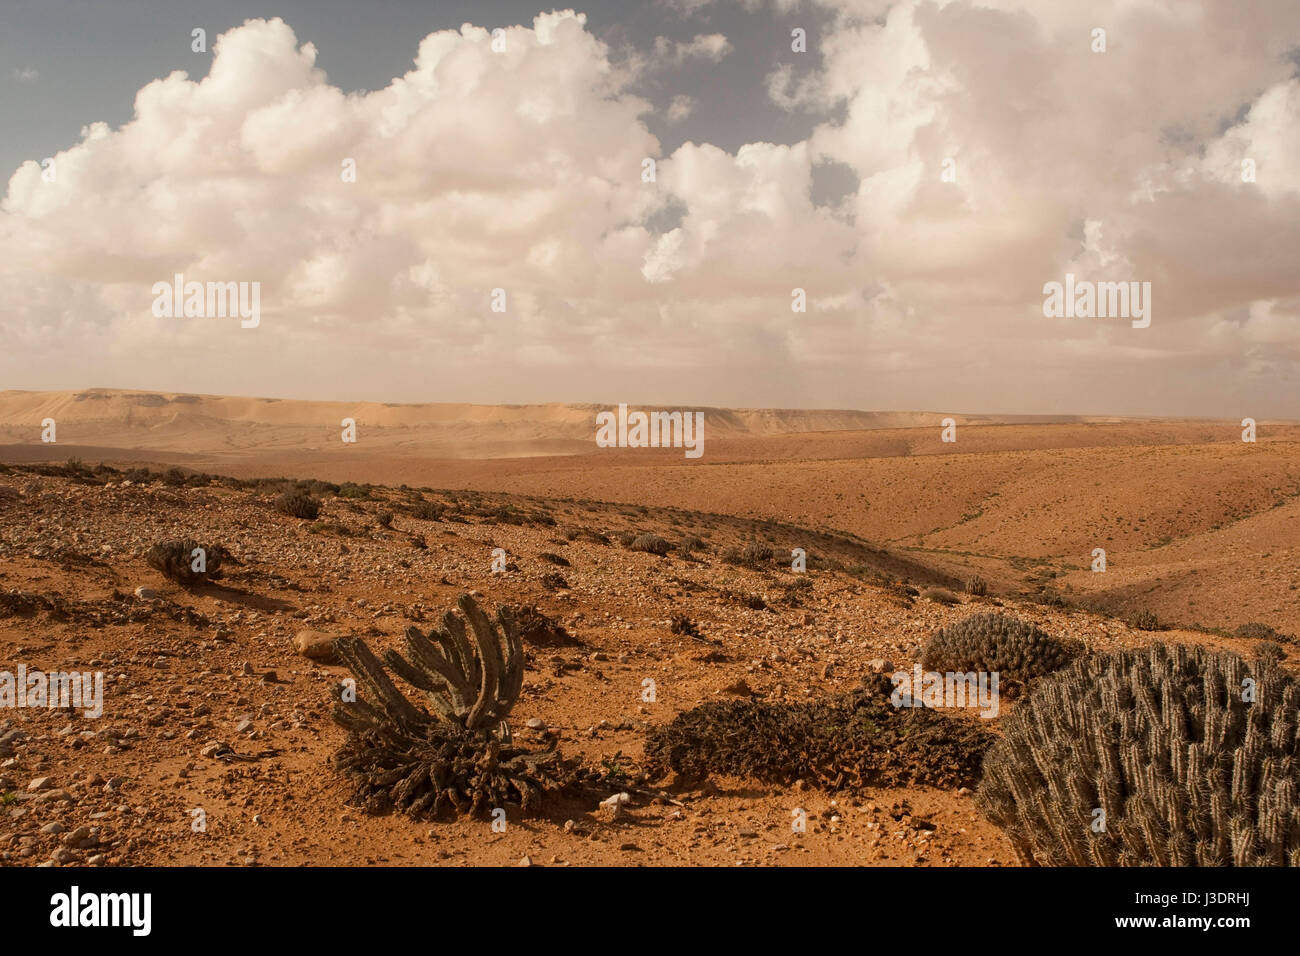 El ancho y la sequía del paisaje durante un viaje a través del Sahara Occidental Foto de stock